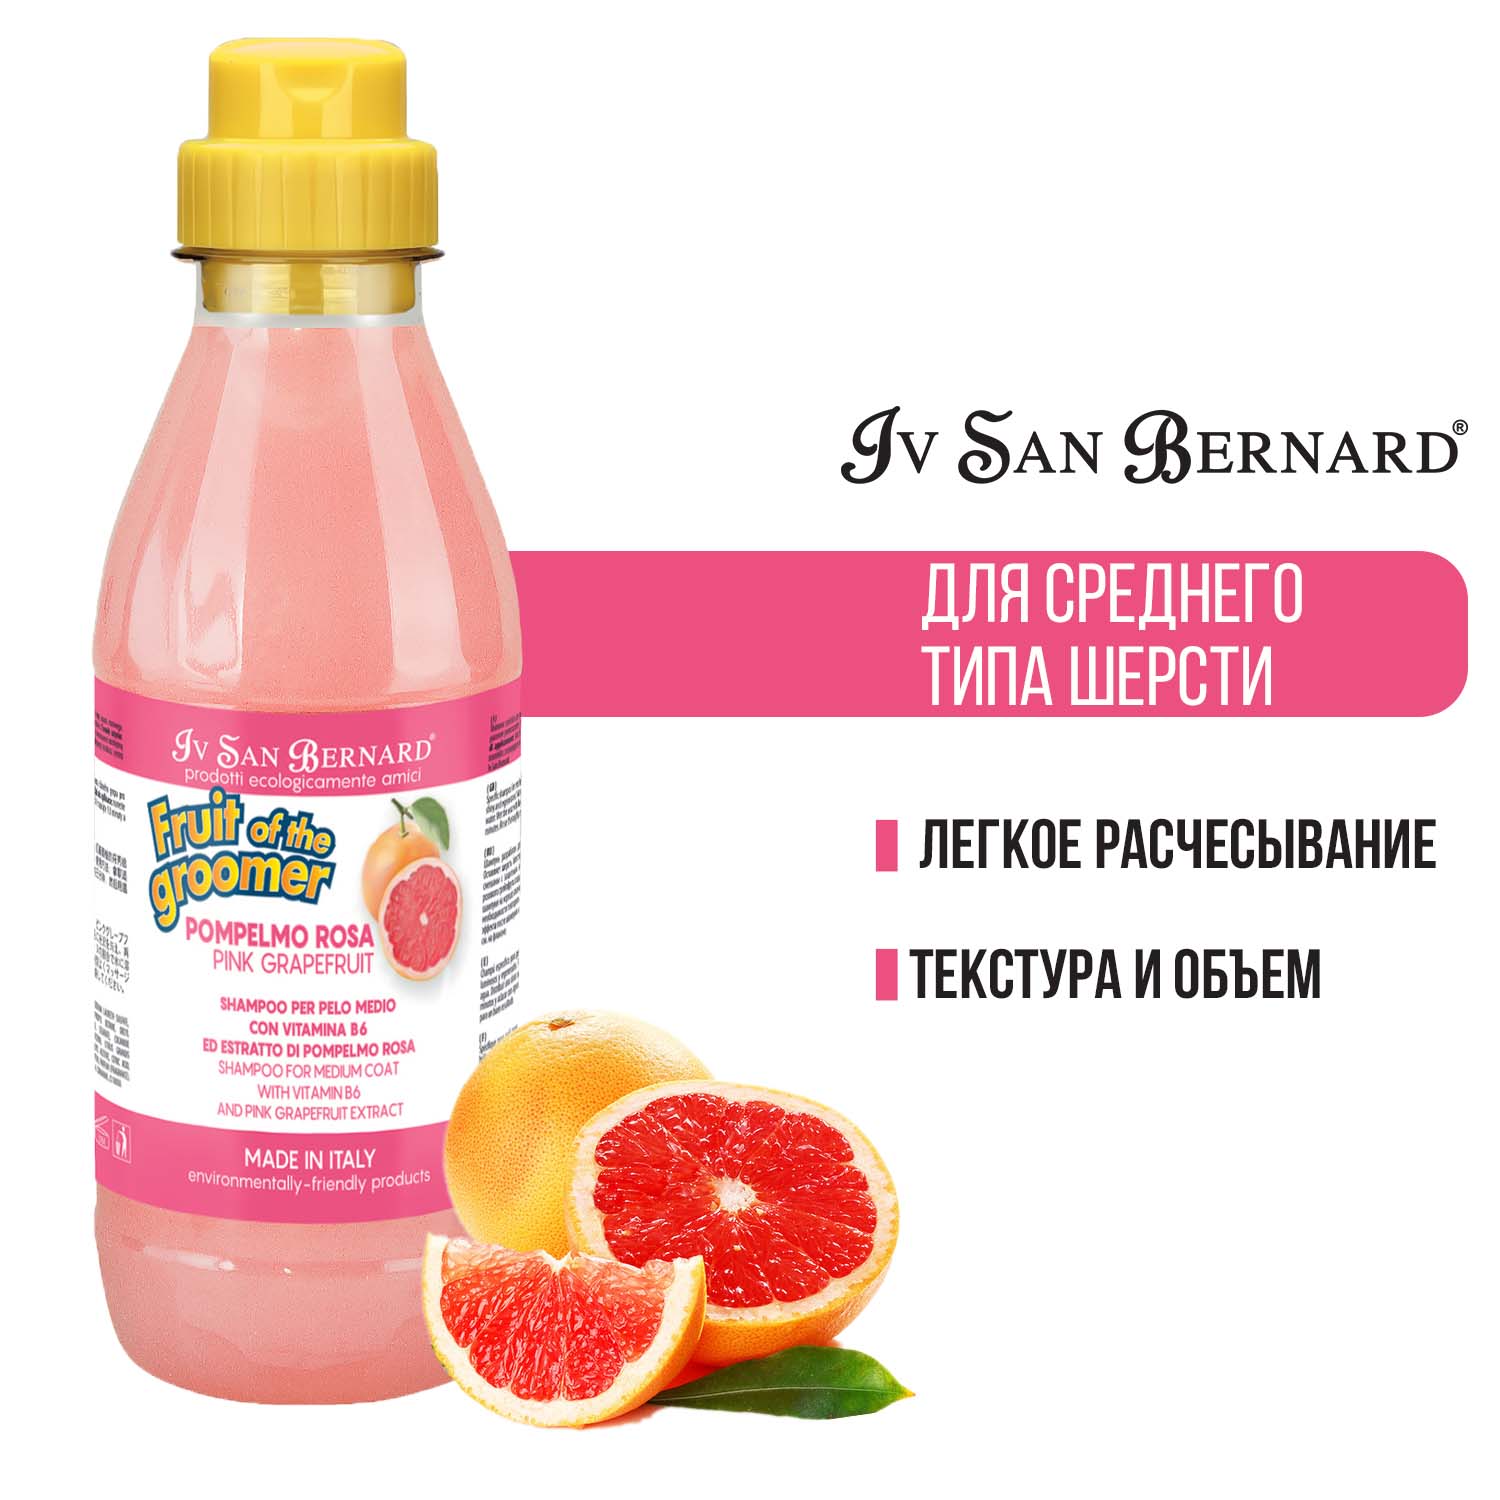 Шампунь Iv San Bernard Fruit of the Groomer Pink Grapefruit для шерсти средней длины с витаминами, для кошек и собак 1